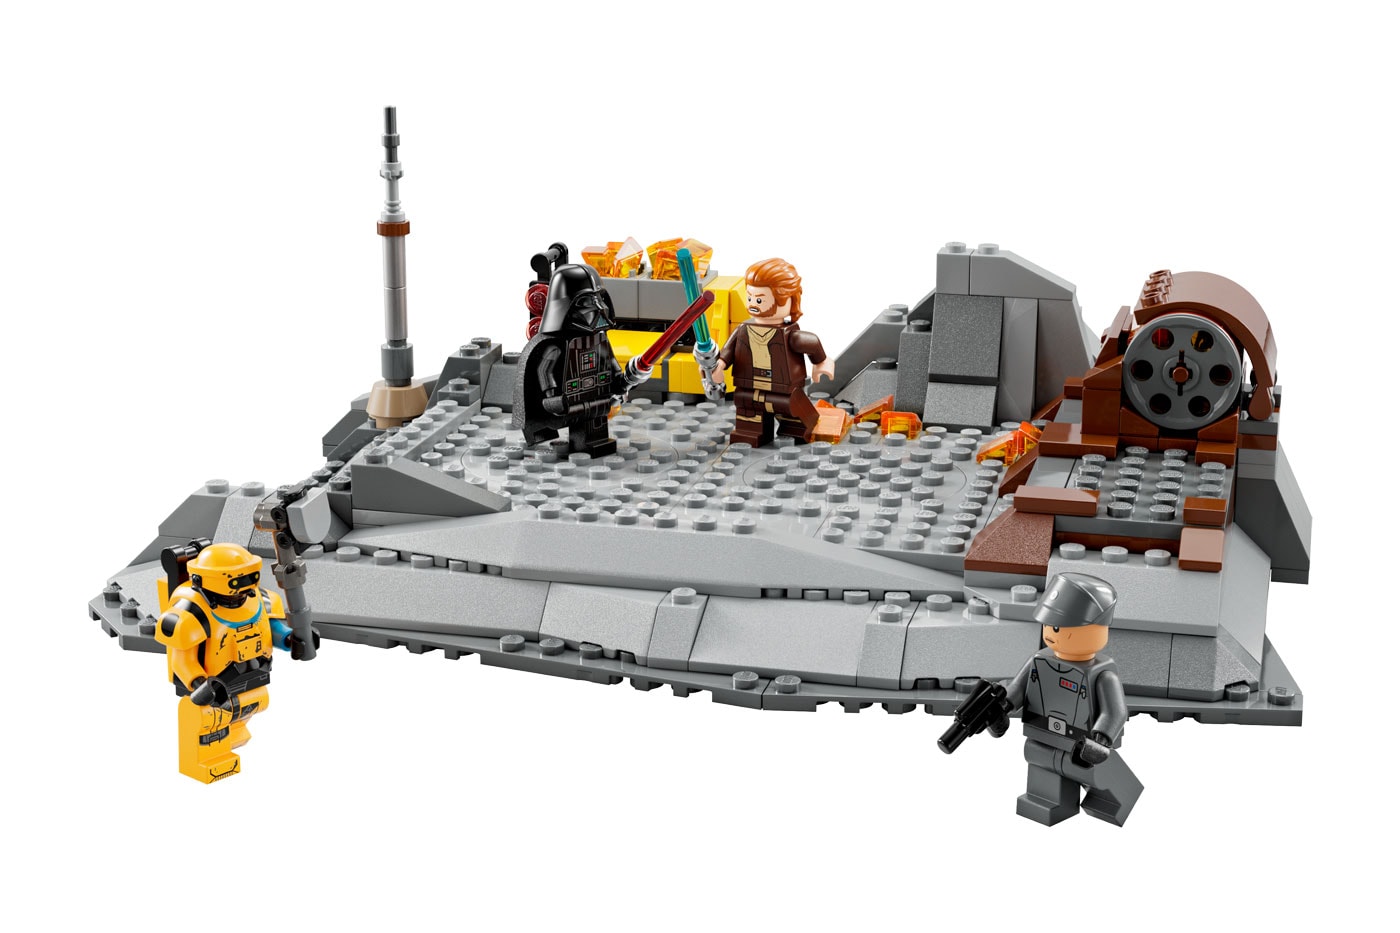 LEGO Star Wars Obi-Wan Kenobi vs Darth Vader Release Info 75334